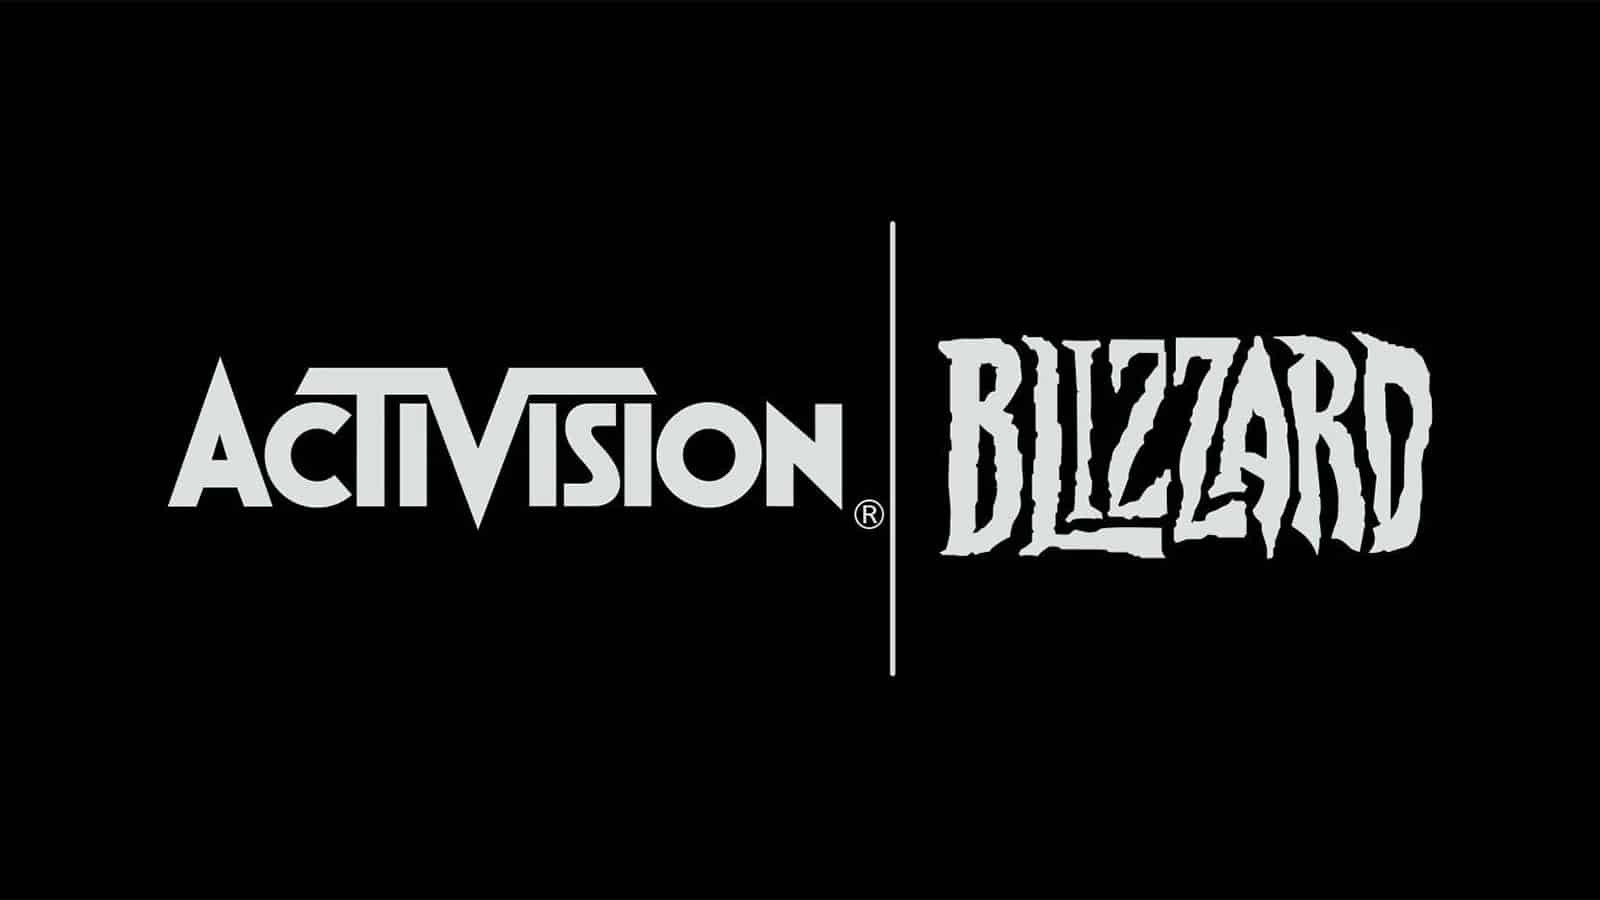 An Activision Blizzard logo